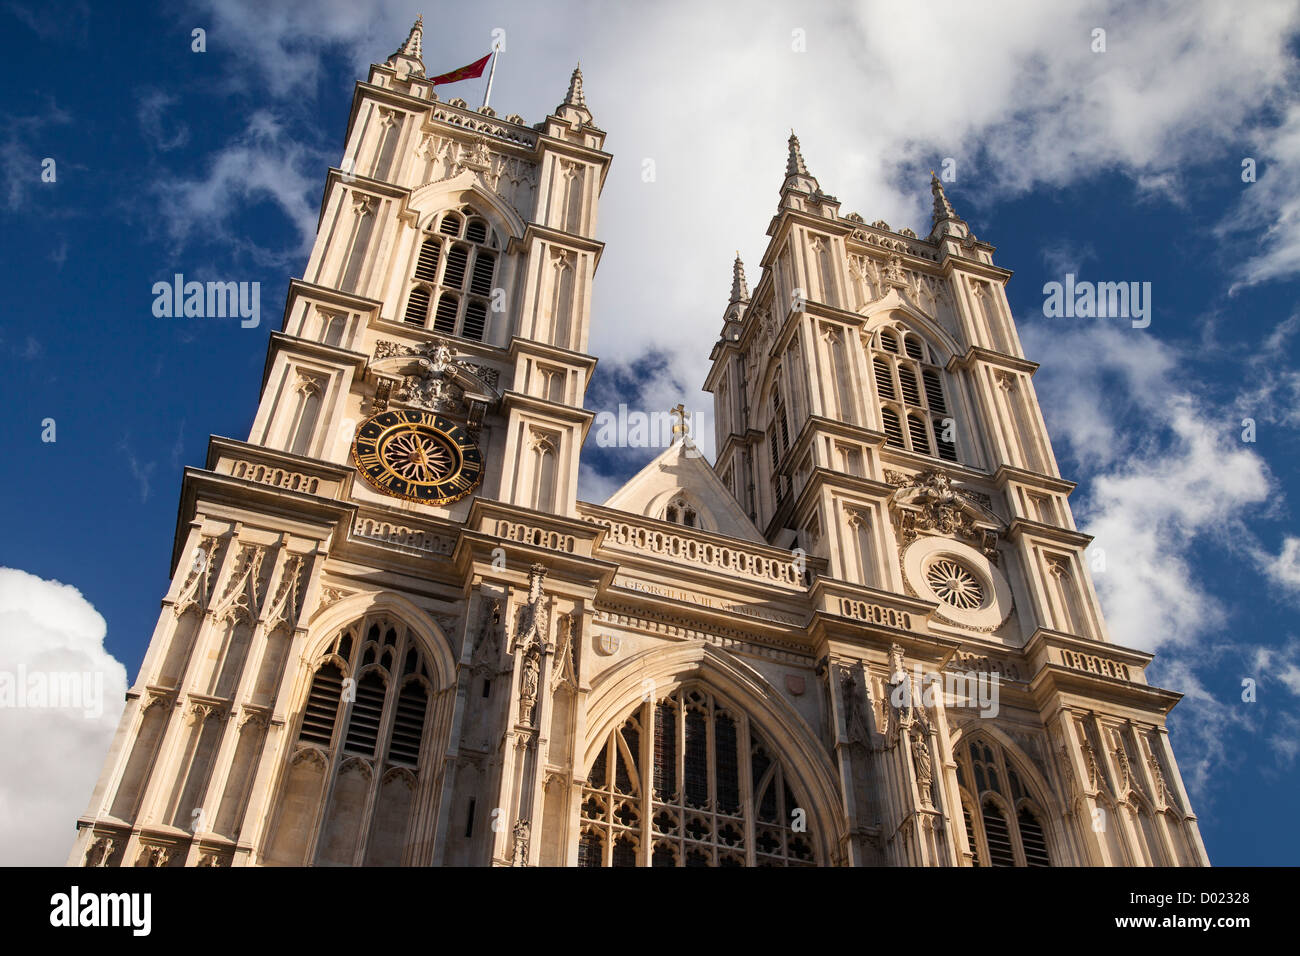 Fachada de la Abadía de Westminster, Londres, Inglaterra, Reino Unido. Foto de stock